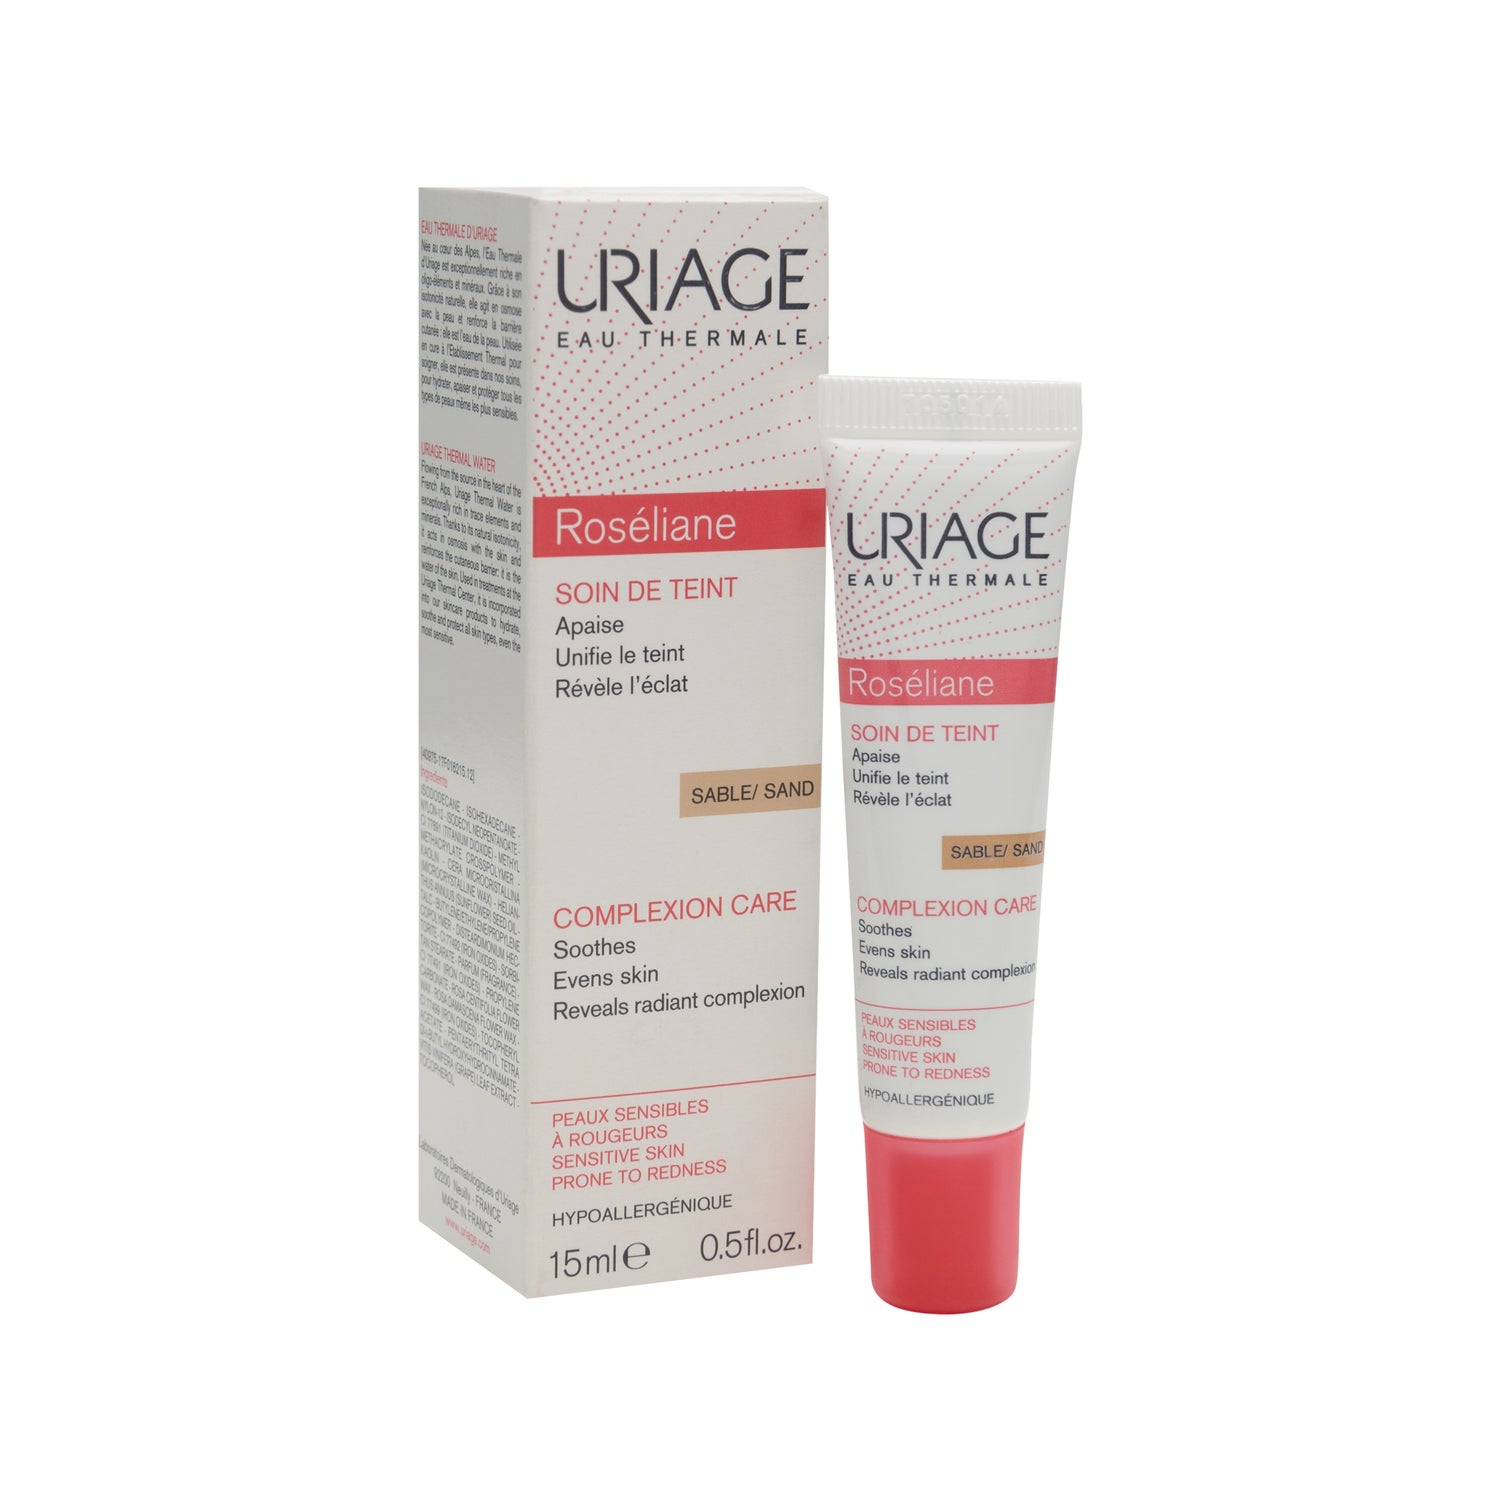 uriage roseliane crema facial color arena piel sensible 15ml